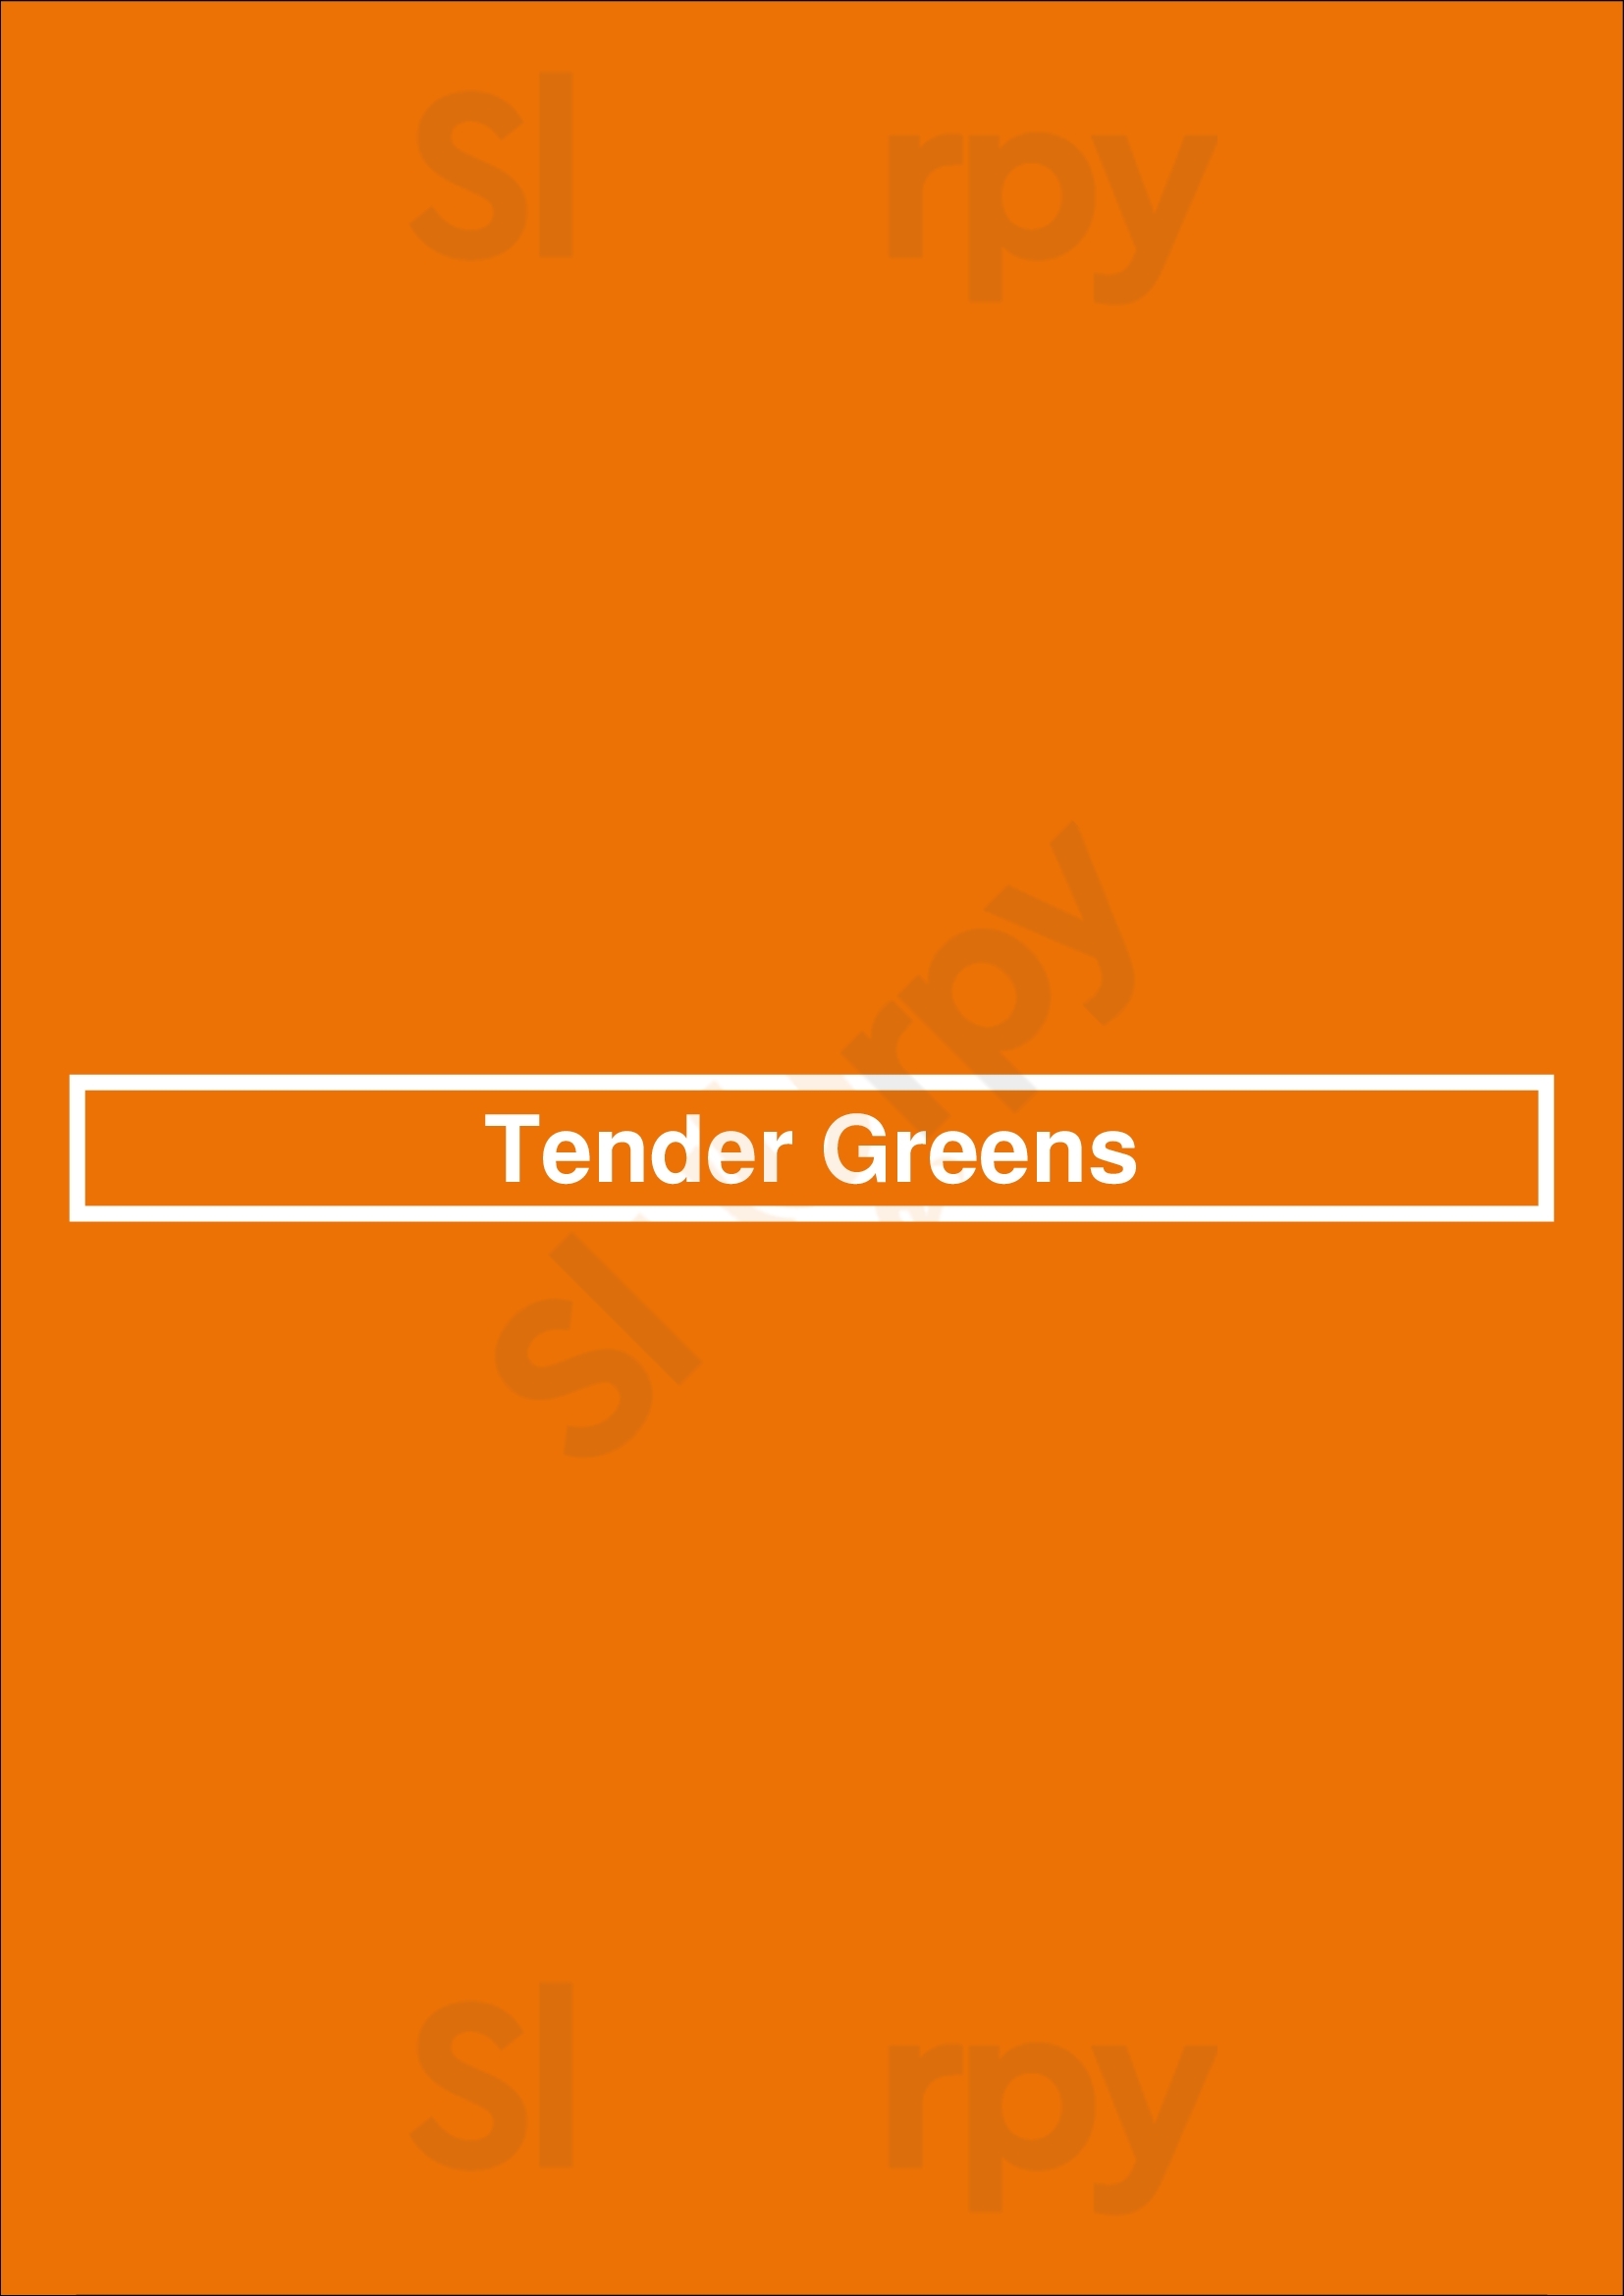 Tender Greens San Diego Menu - 1